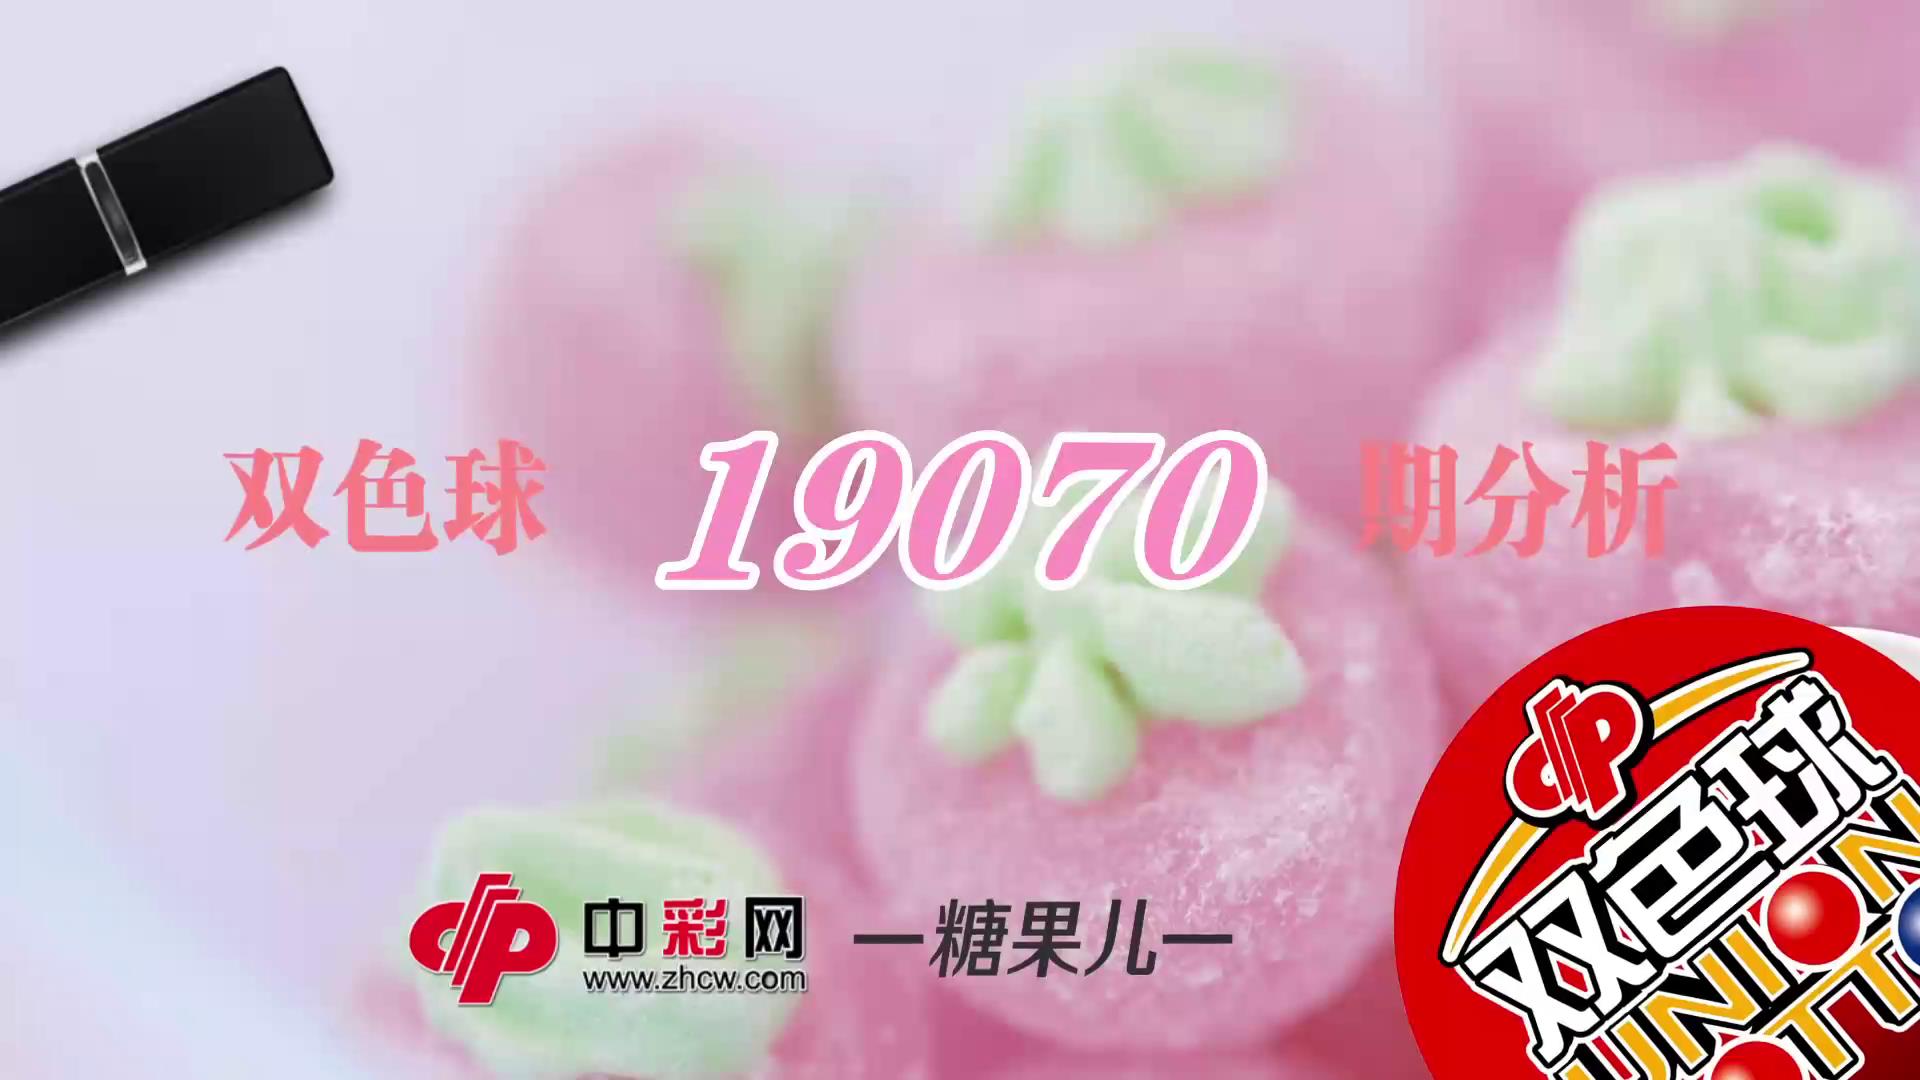 【中彩视频】糖果儿双色球第19070期